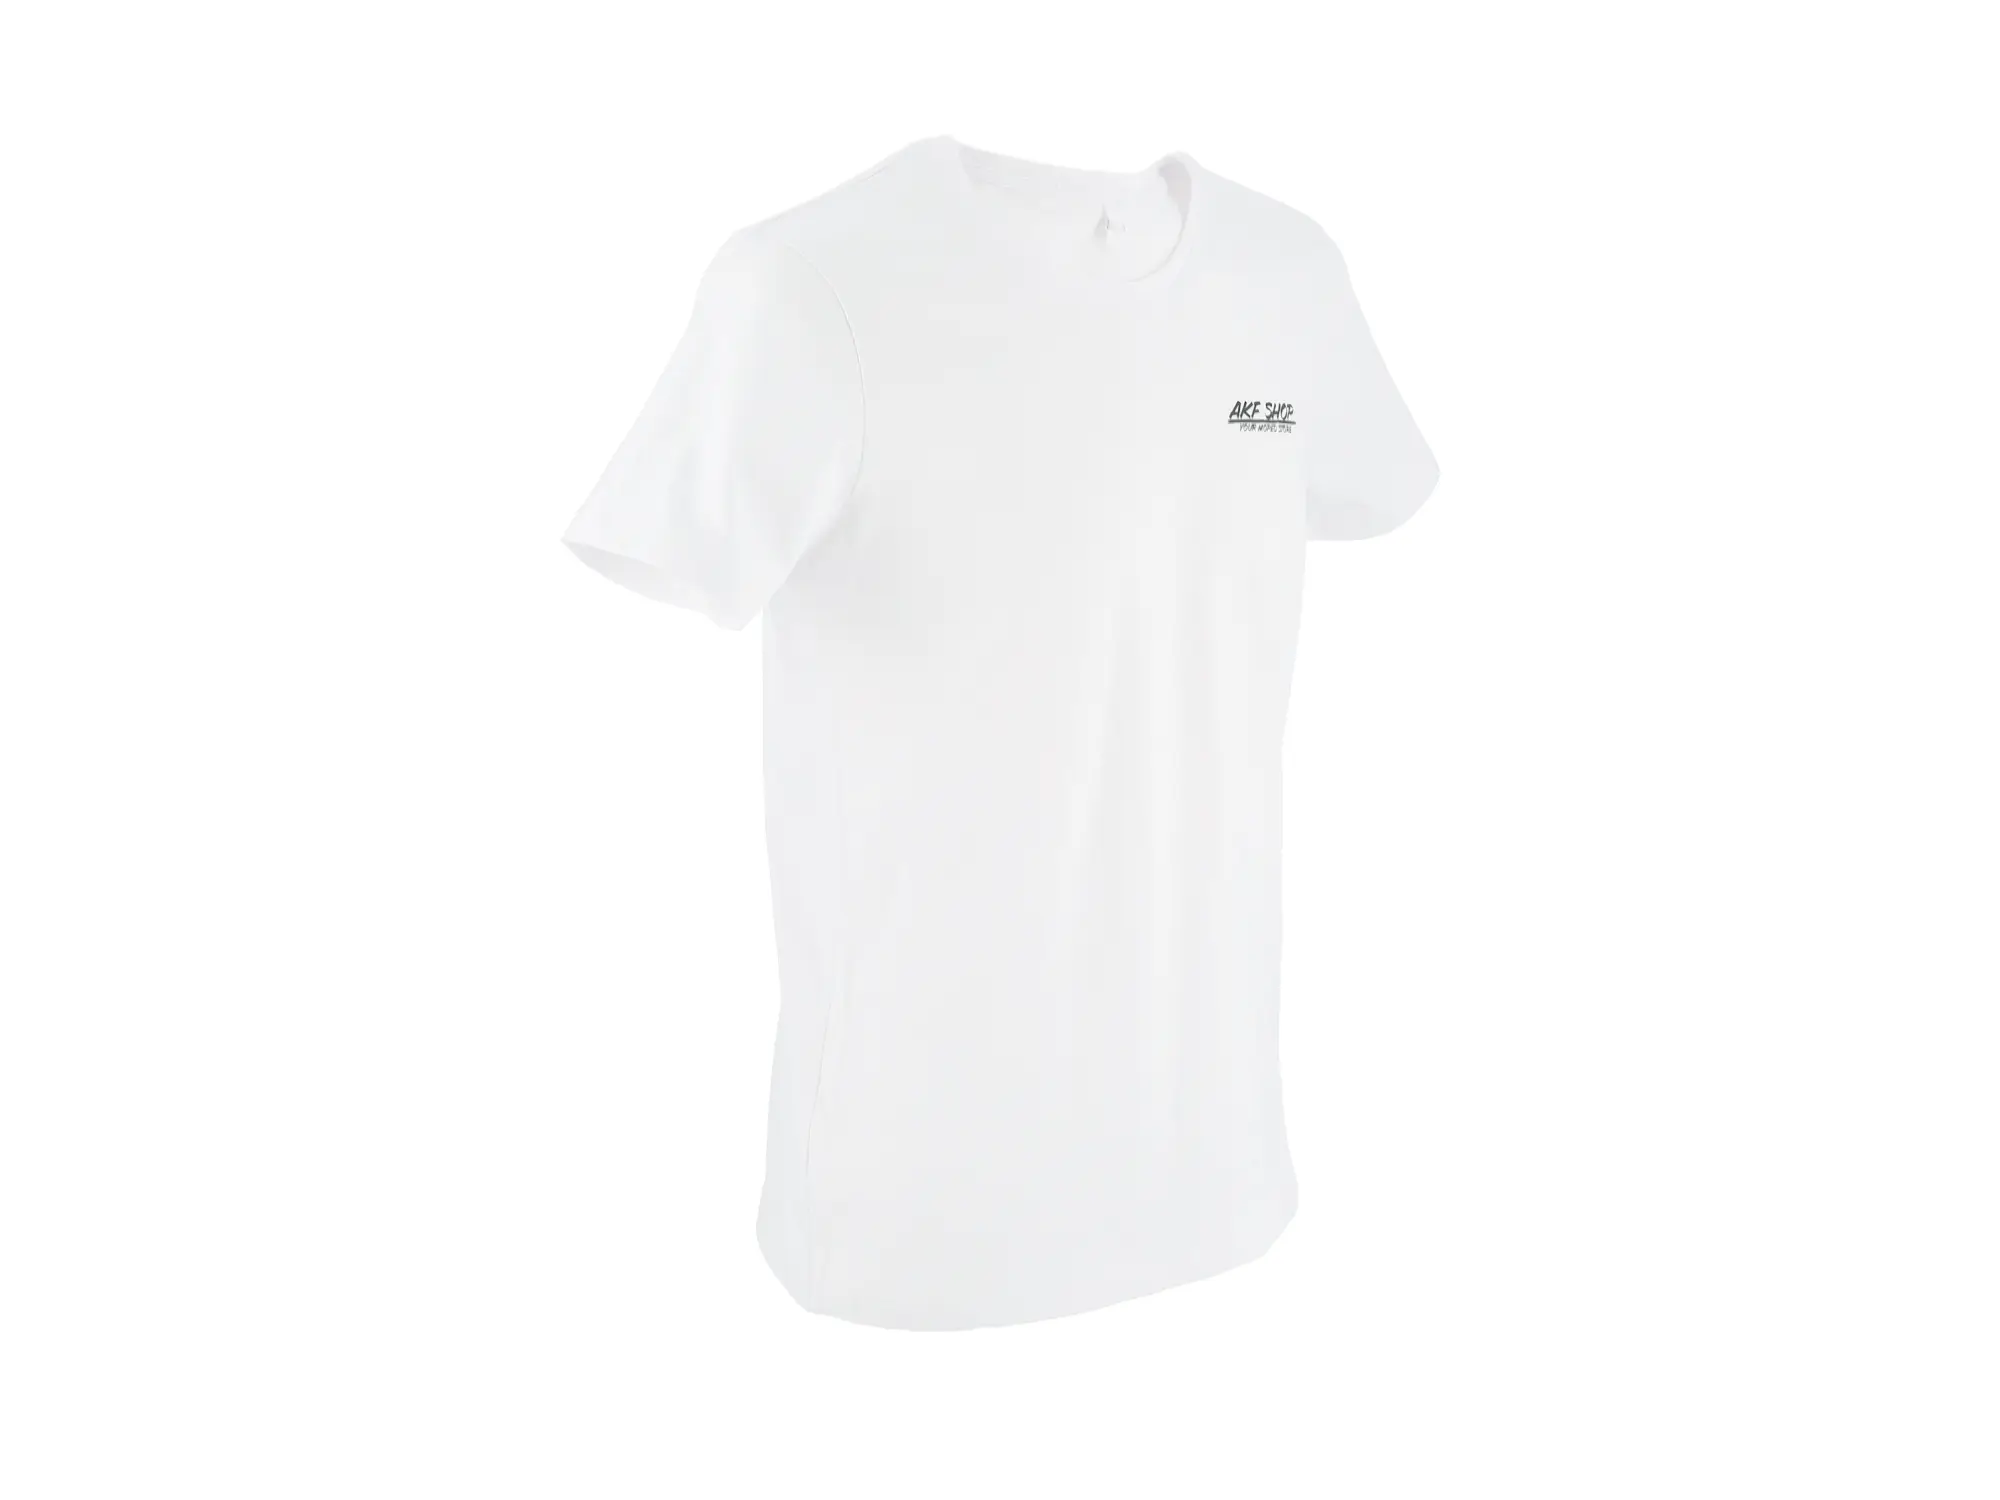 T-Shirt "Benzinhahn" in Weiß, Art.-Nr.: 10076690 - Bild 1